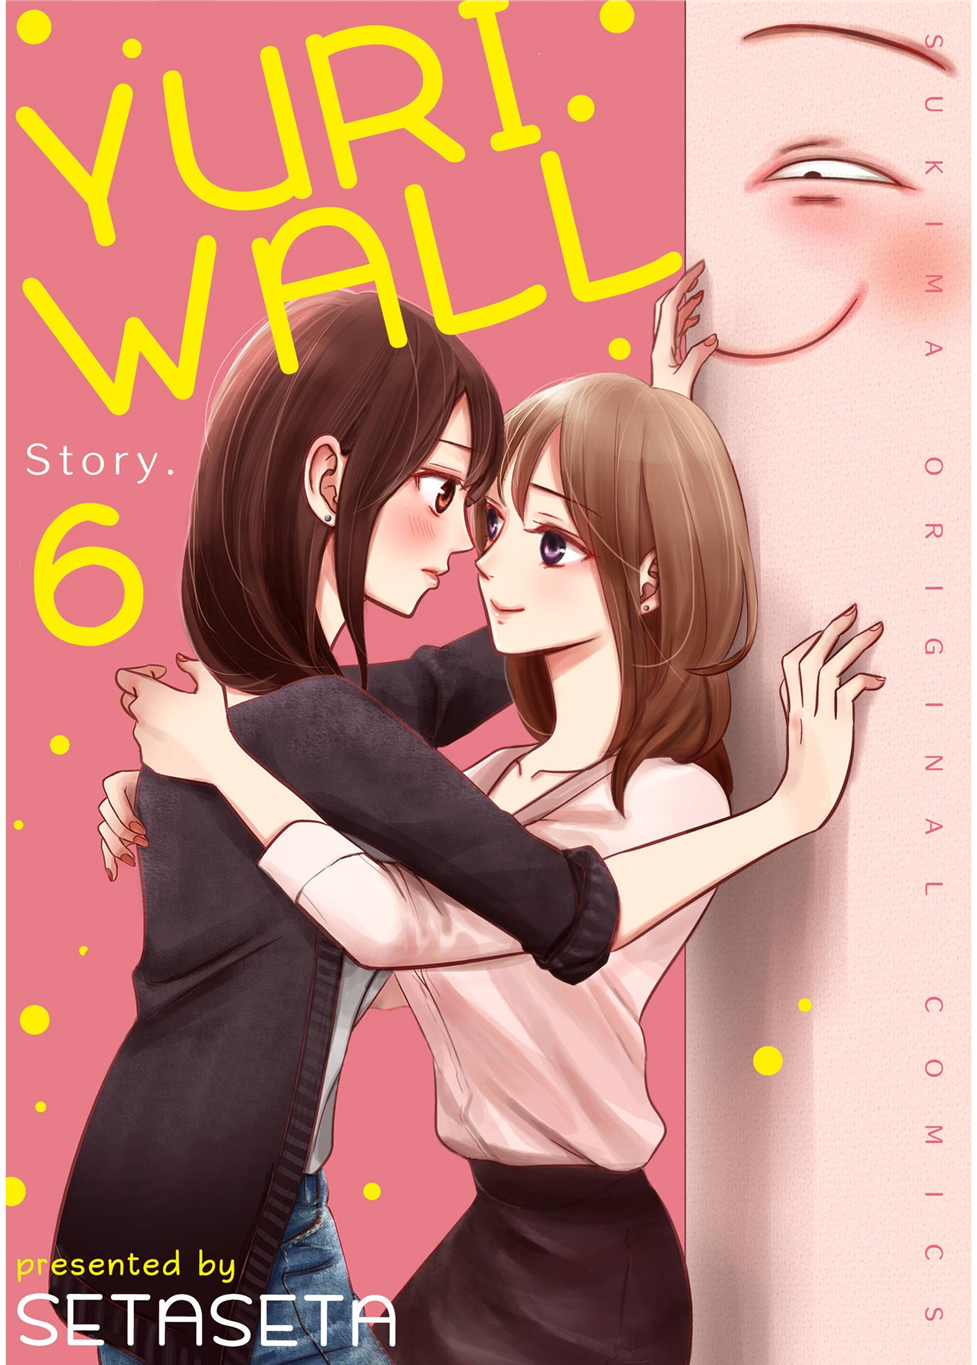 Yuri Wall Story. 6